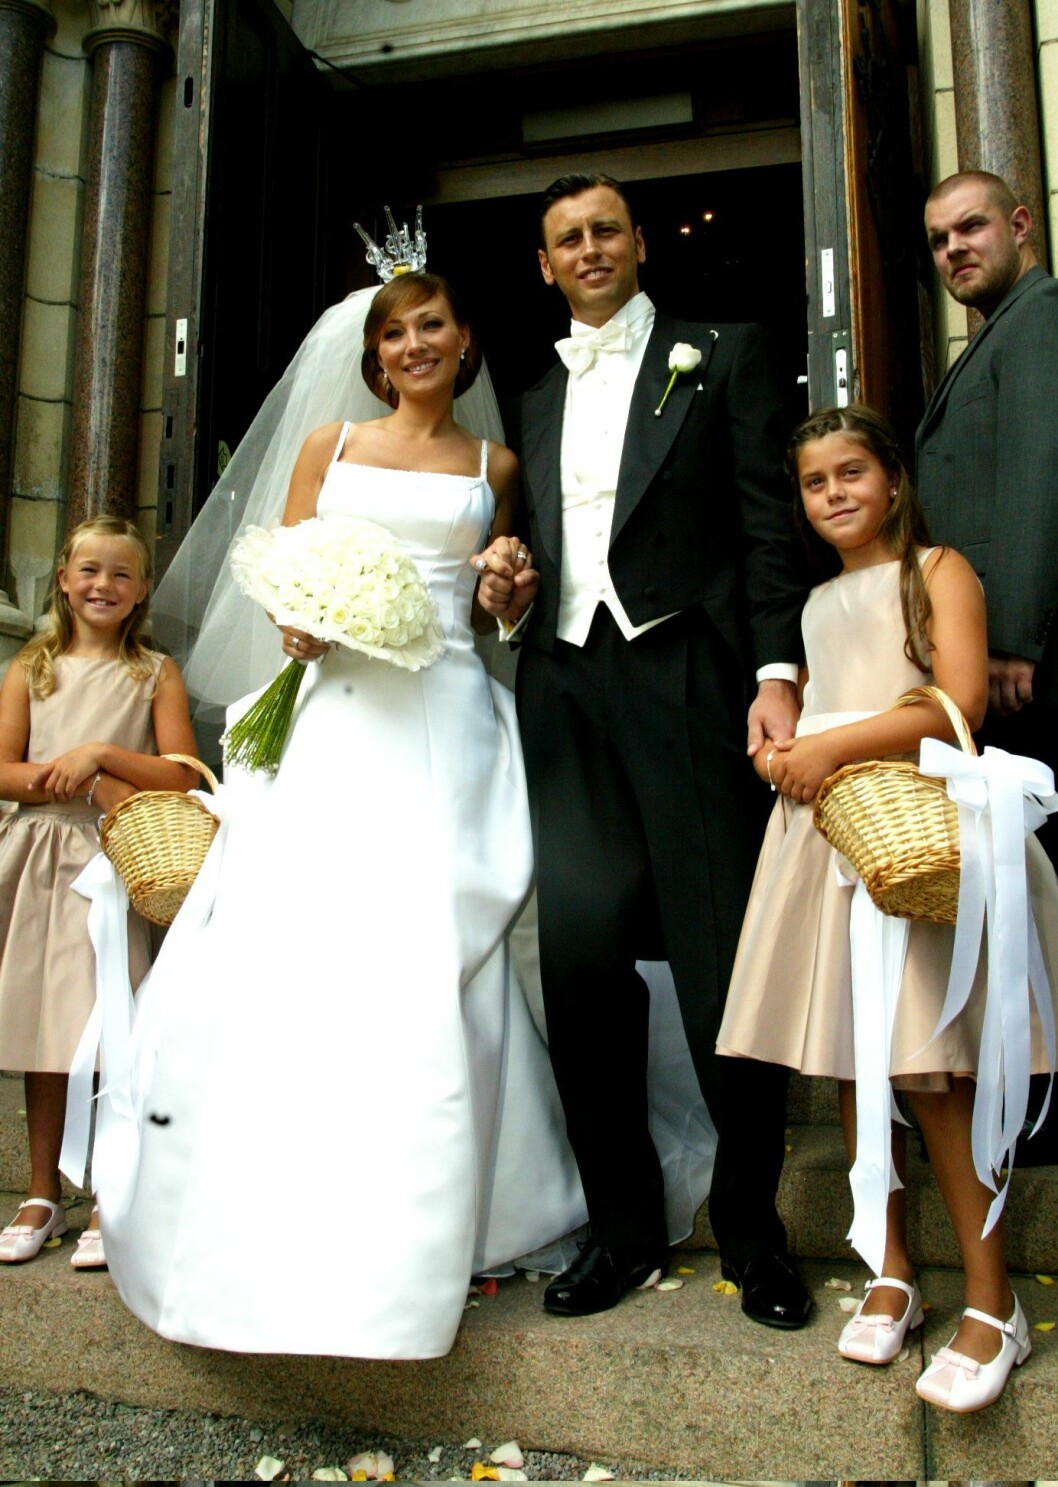 Så här såg det ut när Charlotte Perrelli gifte sig med Nicola Perrelli 2003. Foto: IBL